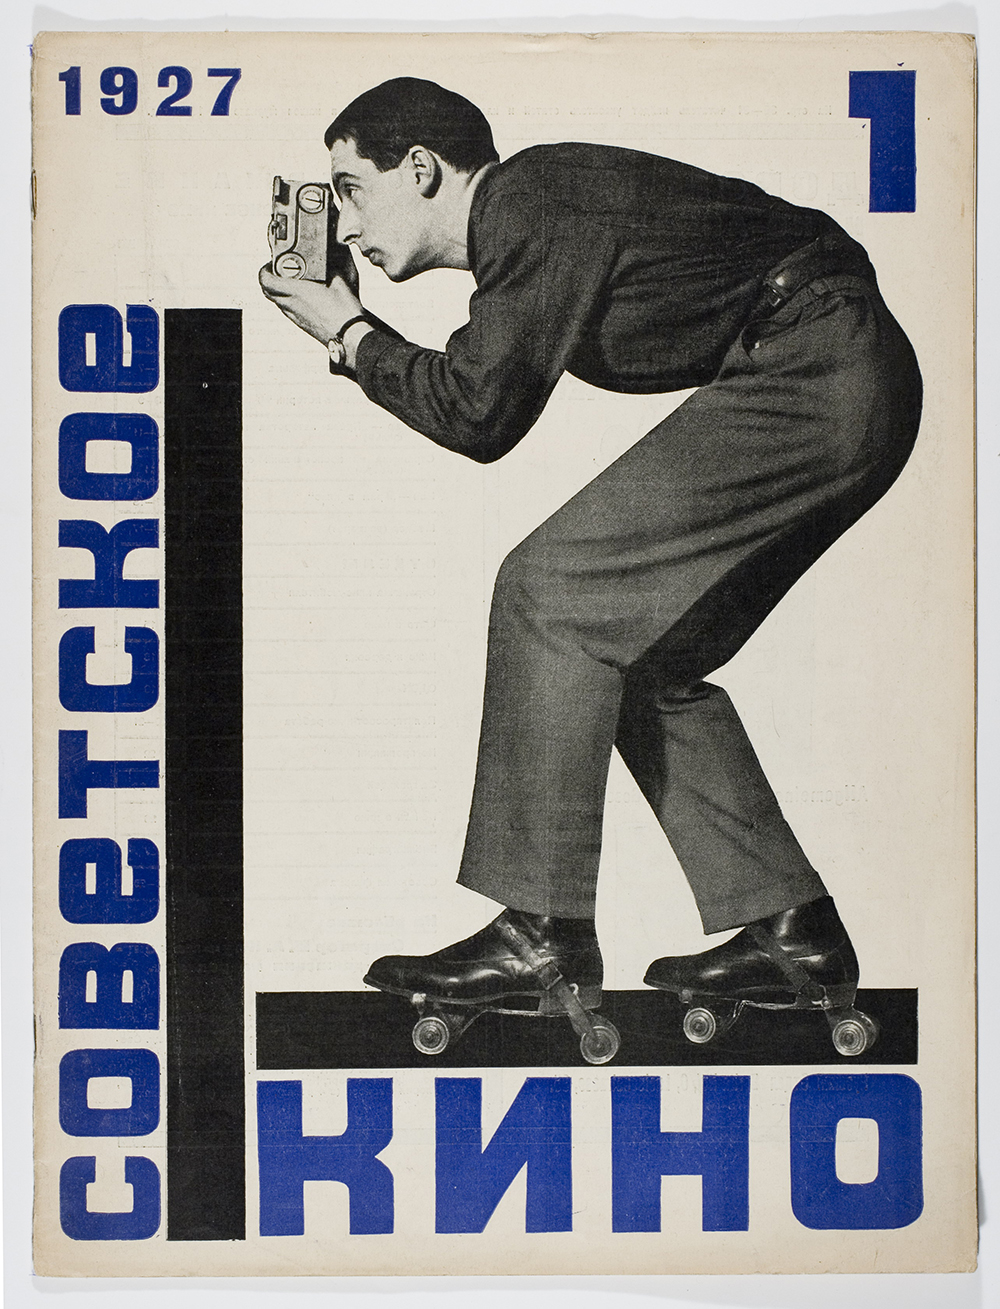 Descrito pelos críticos como um trabalho “audaz e meticuloso”, o filme se desenrola passando pelos acontecimentos revolucionários que ganharam vida no ano de 1917. / Ródtchenko, Cinema Soviético No.1, 1917